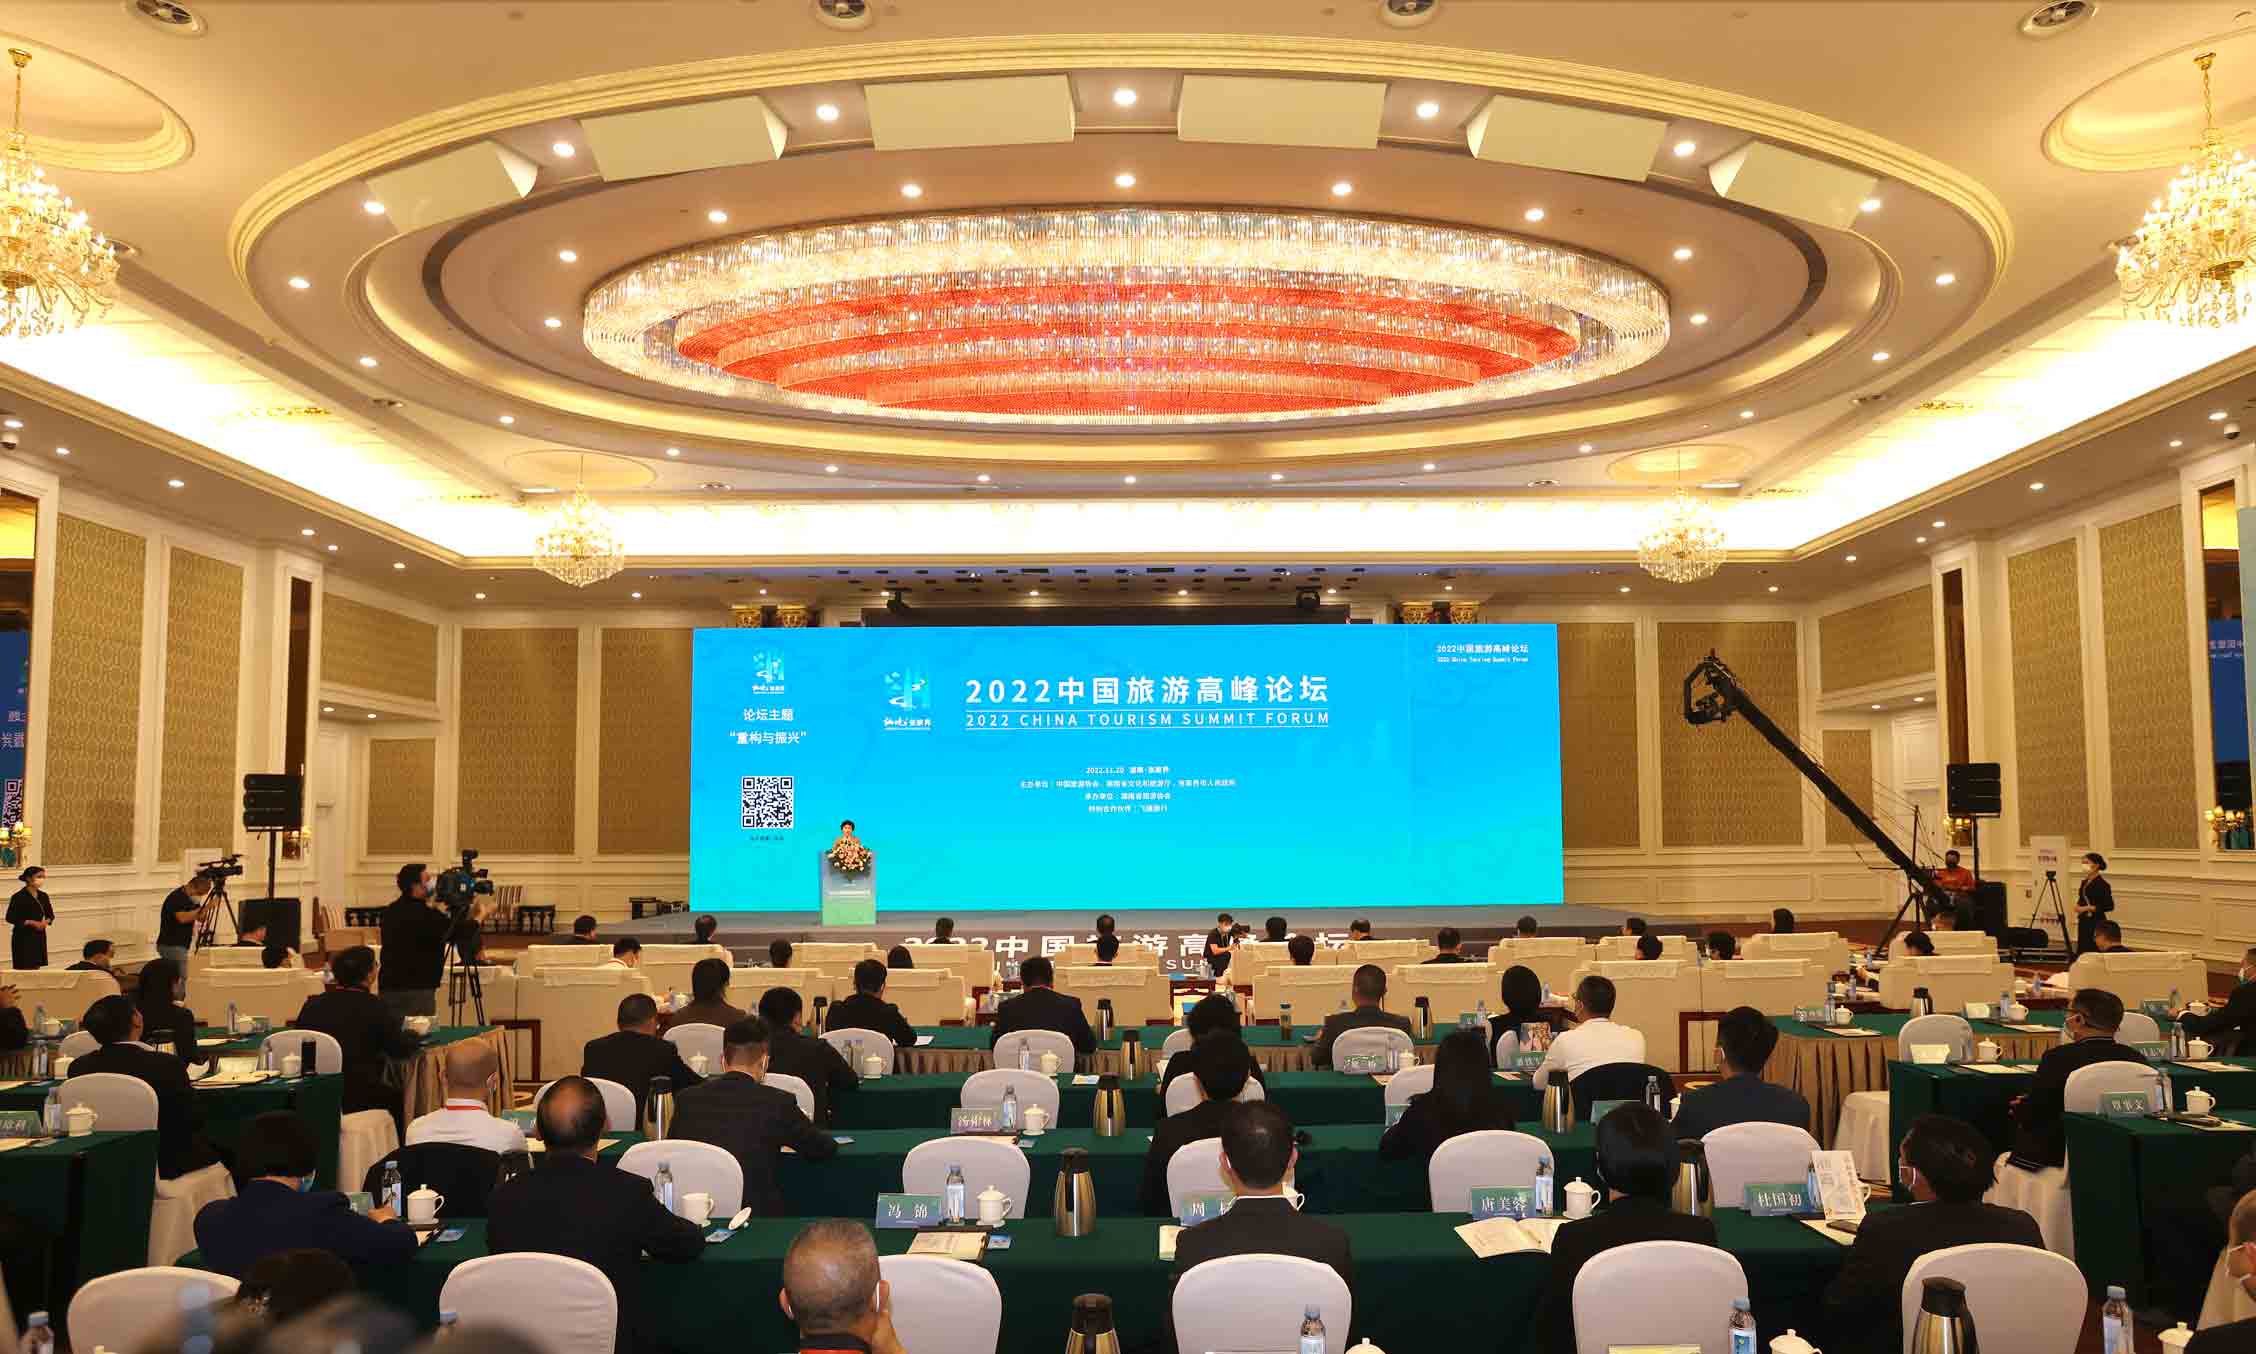 2022中国旅游高峰论坛。 首届湖南旅游发展大会组委会供图